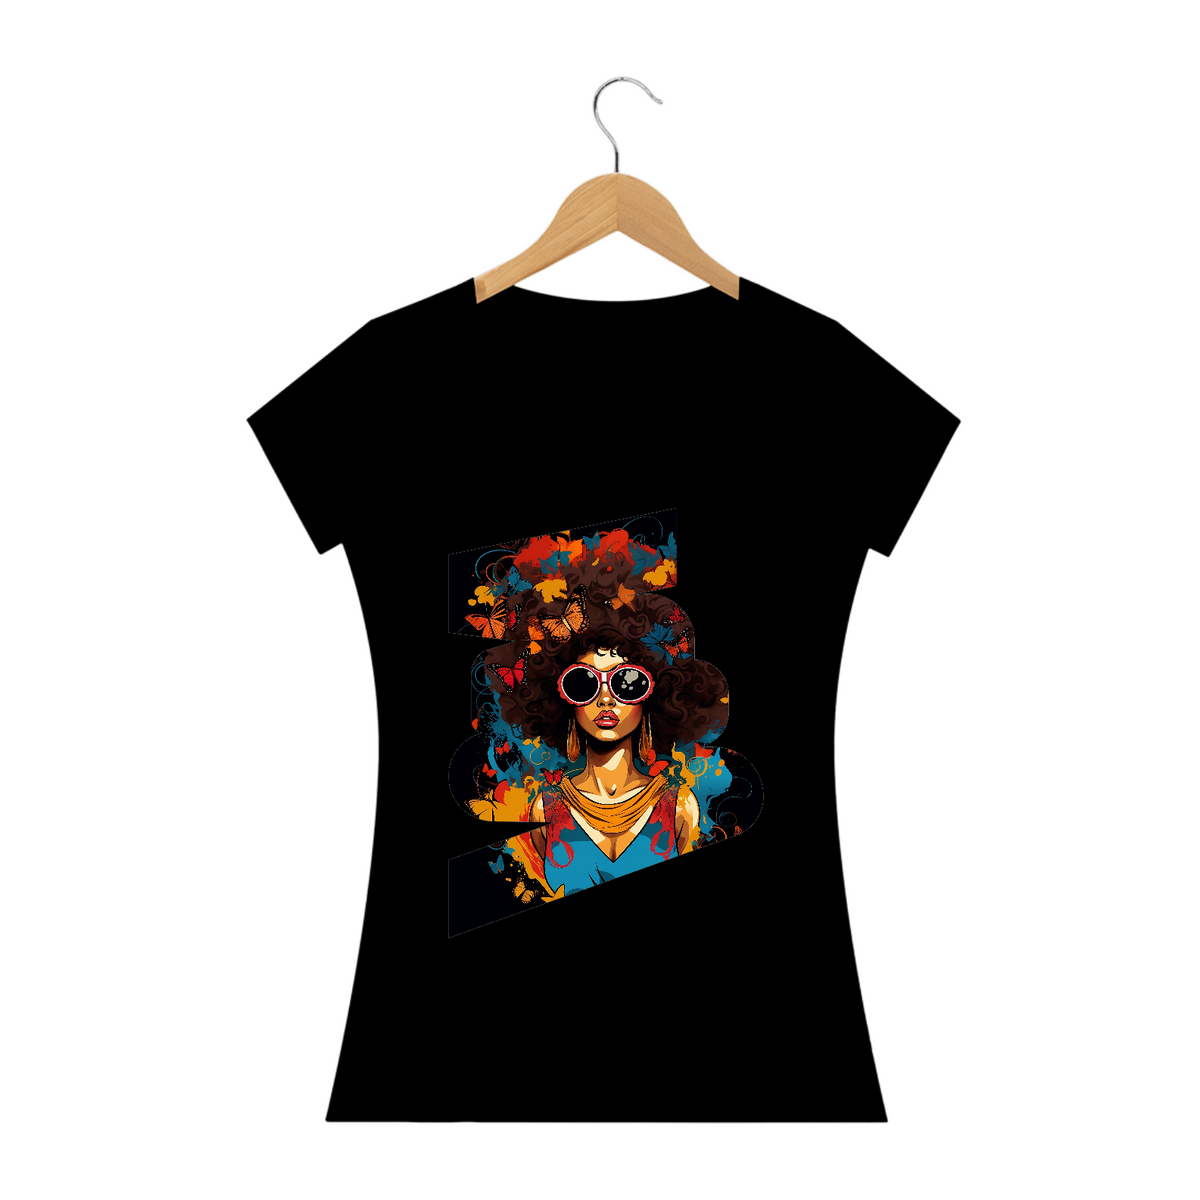 Nome do produto: Camiseta Feminina Mulher Afro com Borboletas: Uma Explosão de Estilos Artísticos